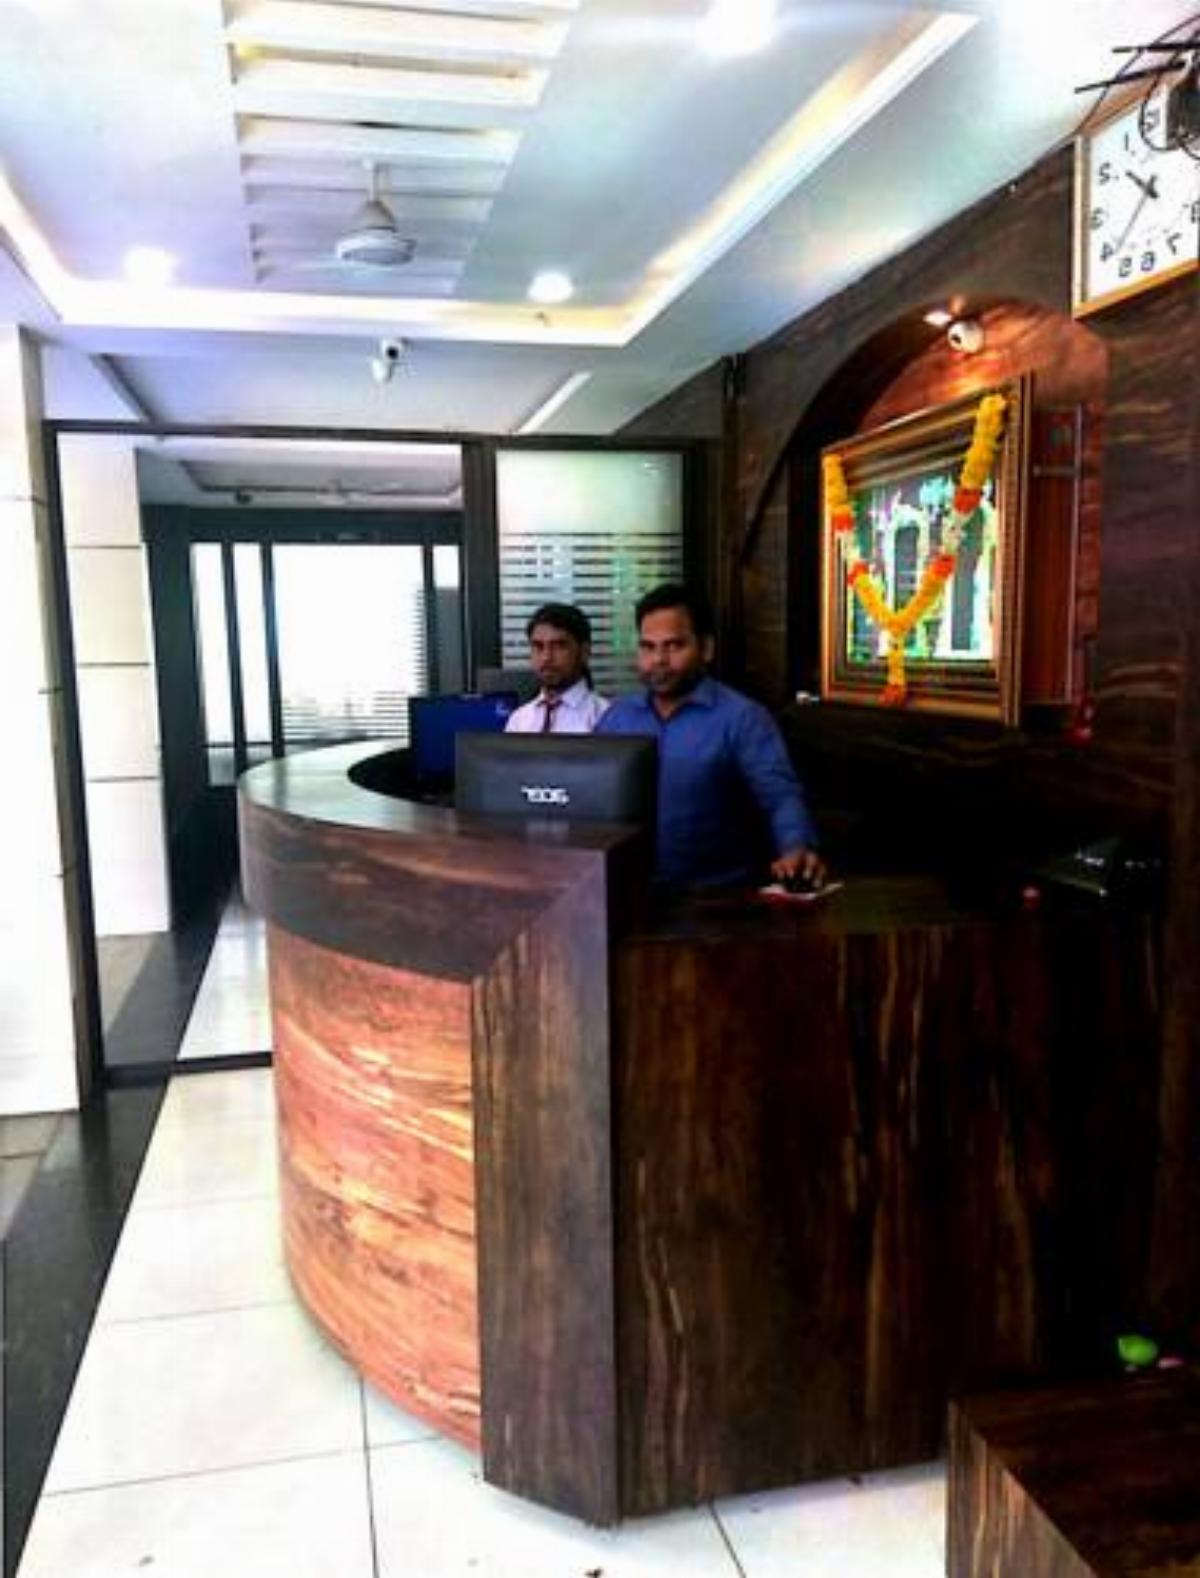 sangam residency luxury Hotel Gulbarga India